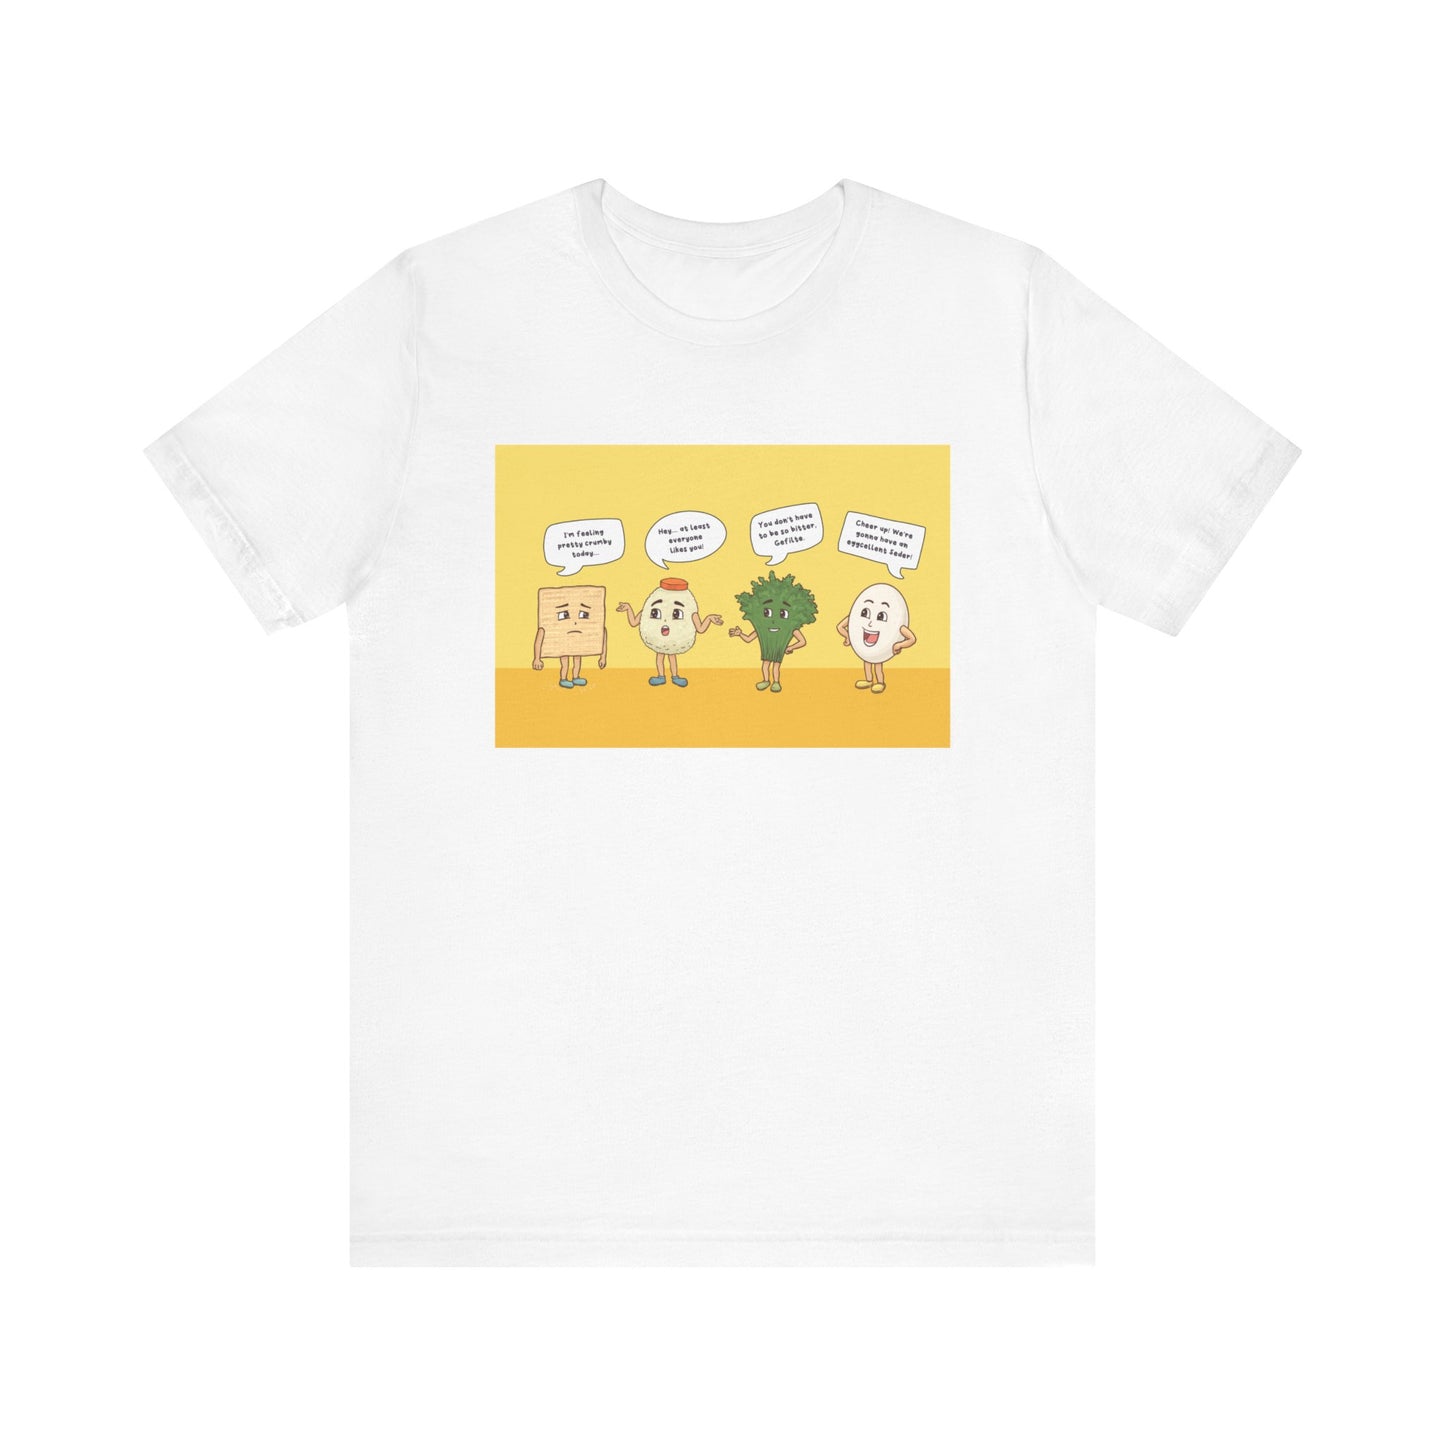 Kvetchy Passover Character T-Shirt